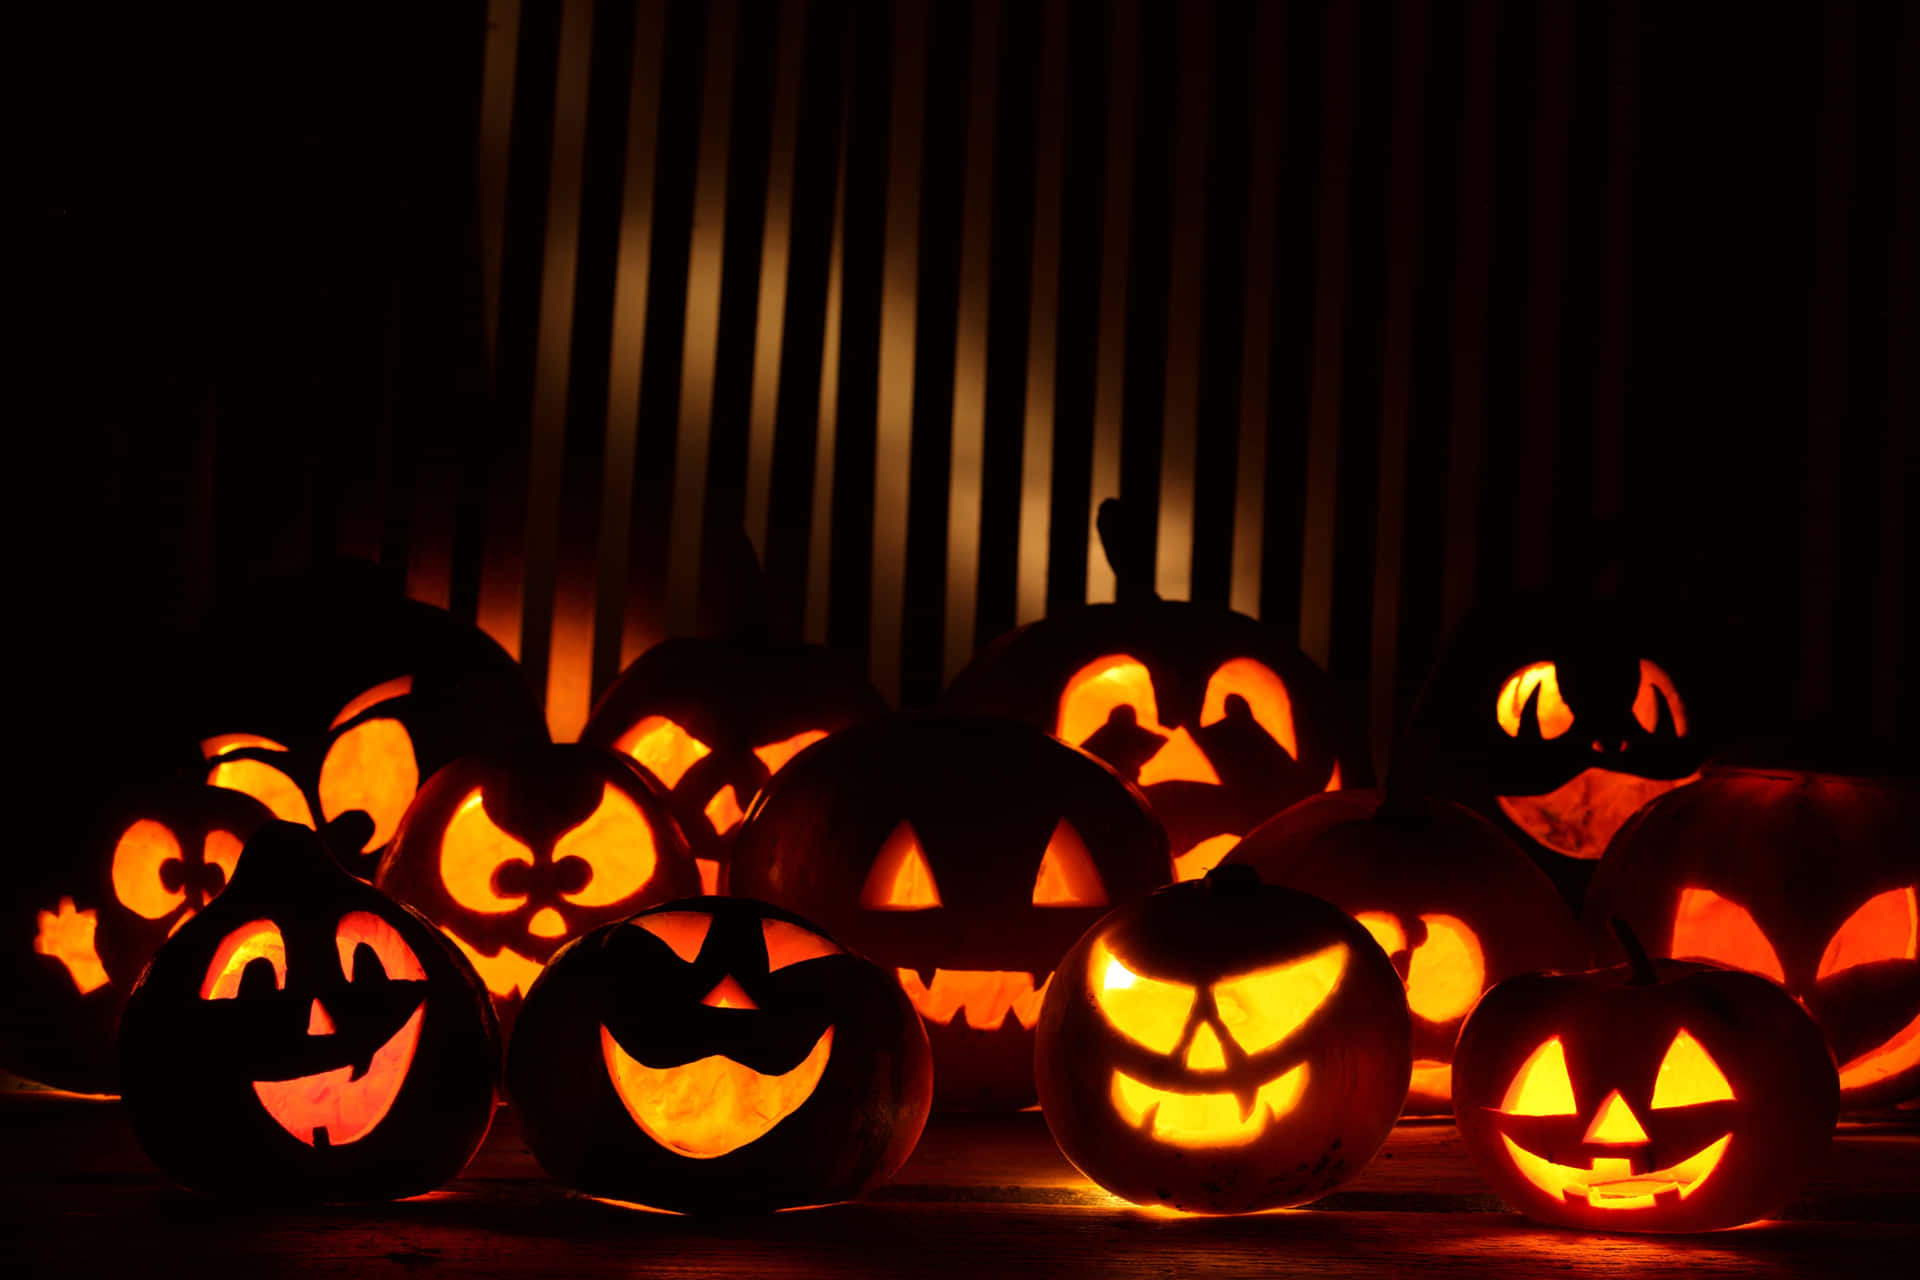 Unfavorito De Halloween - Tallar Una Calabaza De Jack O Lantern.